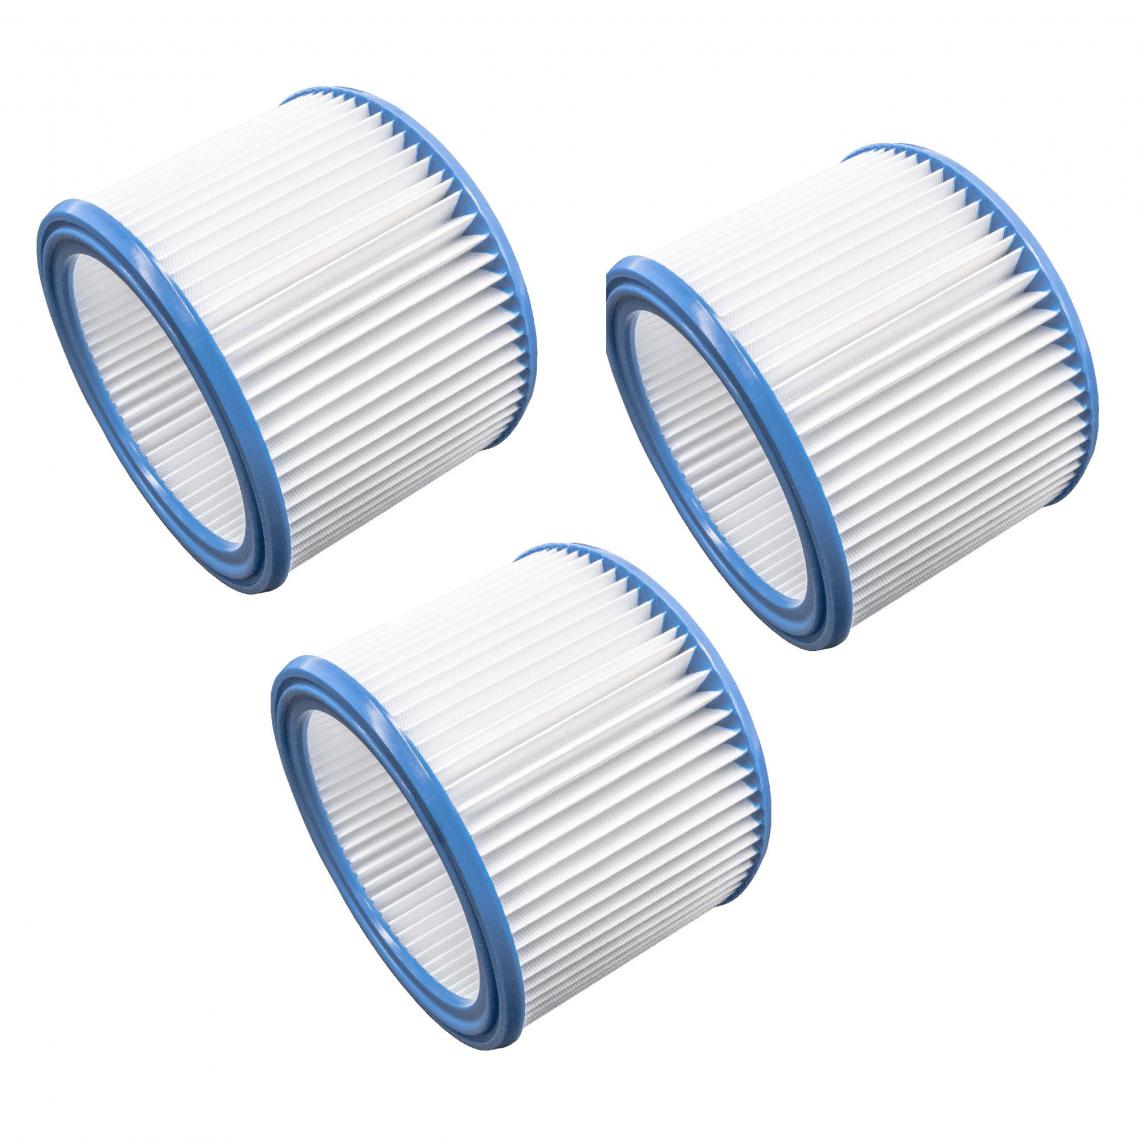 Vhbw - vhbw Set de filtres 3x Filtre plissé compatible avec WAP Attix 550-11, 550-2M, 590-21, 751-11, 751-21 aspirateur à sec ou humide - Filtre à cartouche - Accessoire entretien des sols